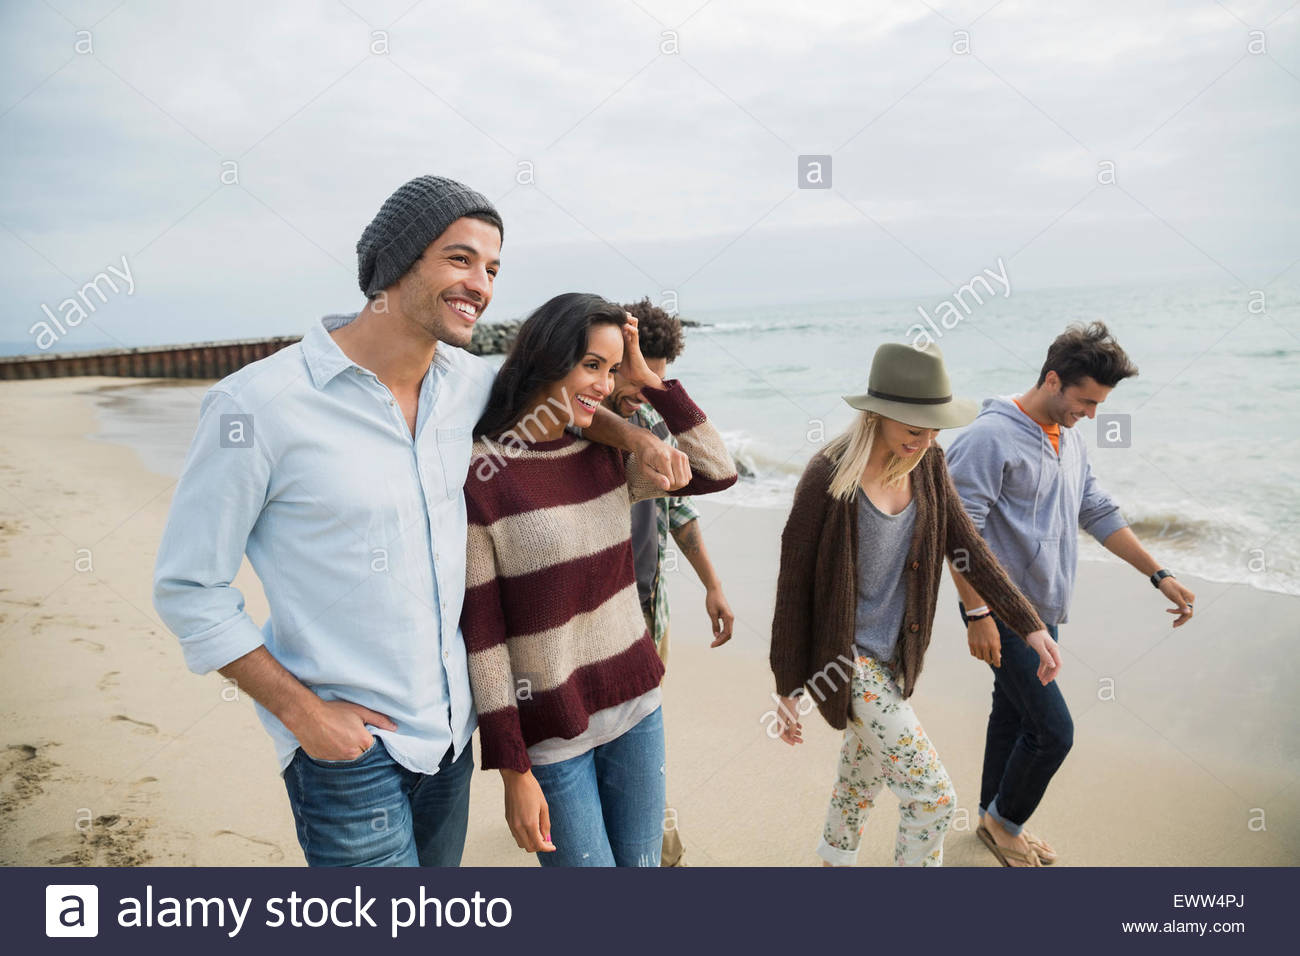 Des couples walking on beach Banque D'Images